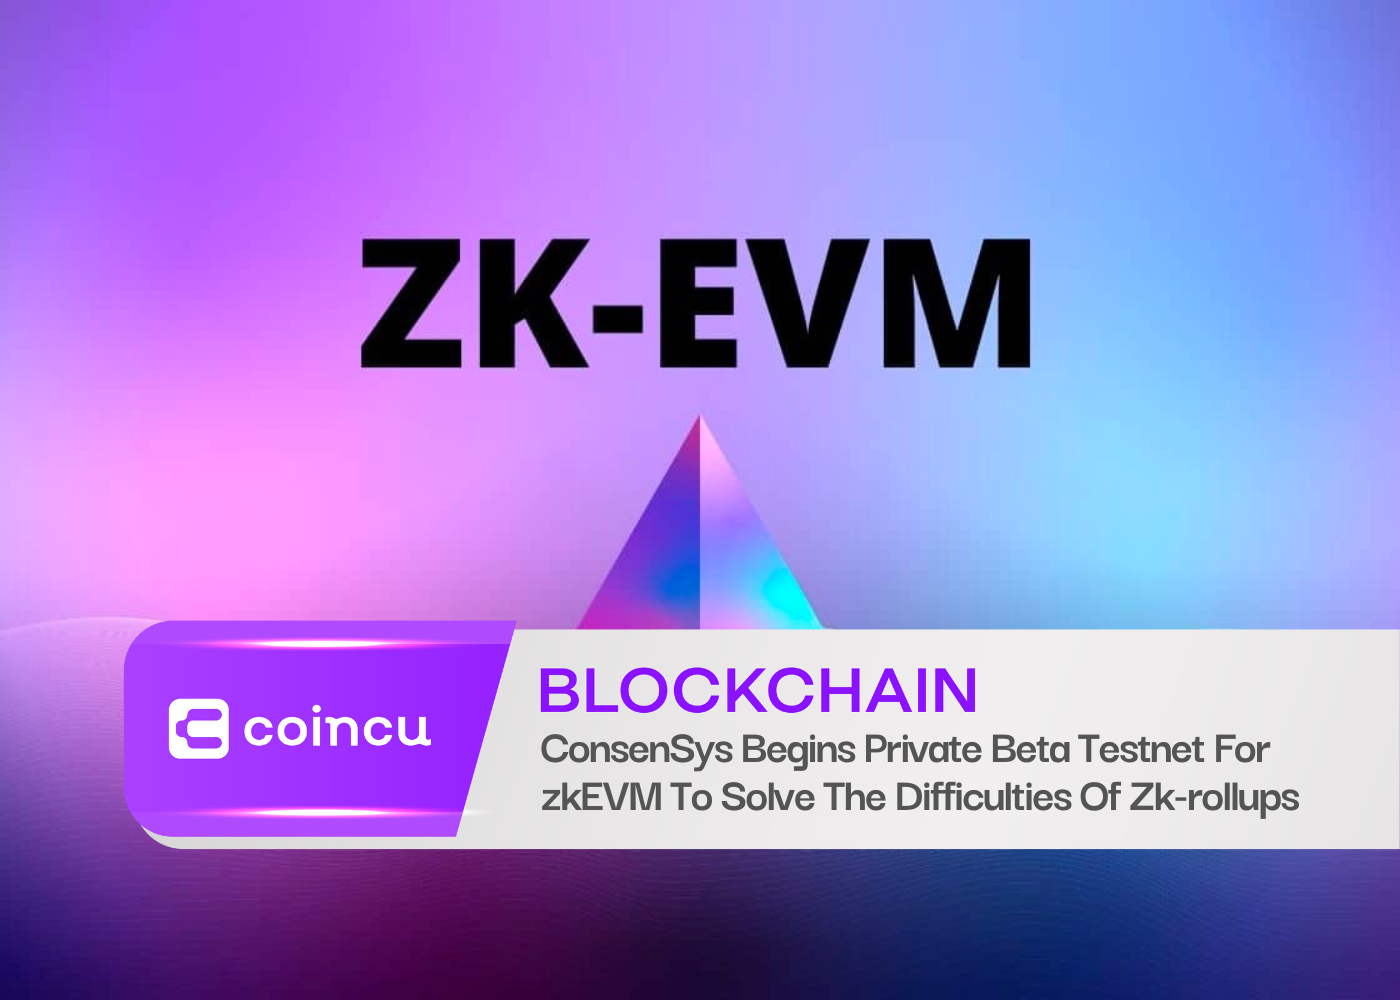 ConsenSys comienza una red de prueba beta privada para zkEVM para resolver las dificultades de los paquetes acumulativos de Zk